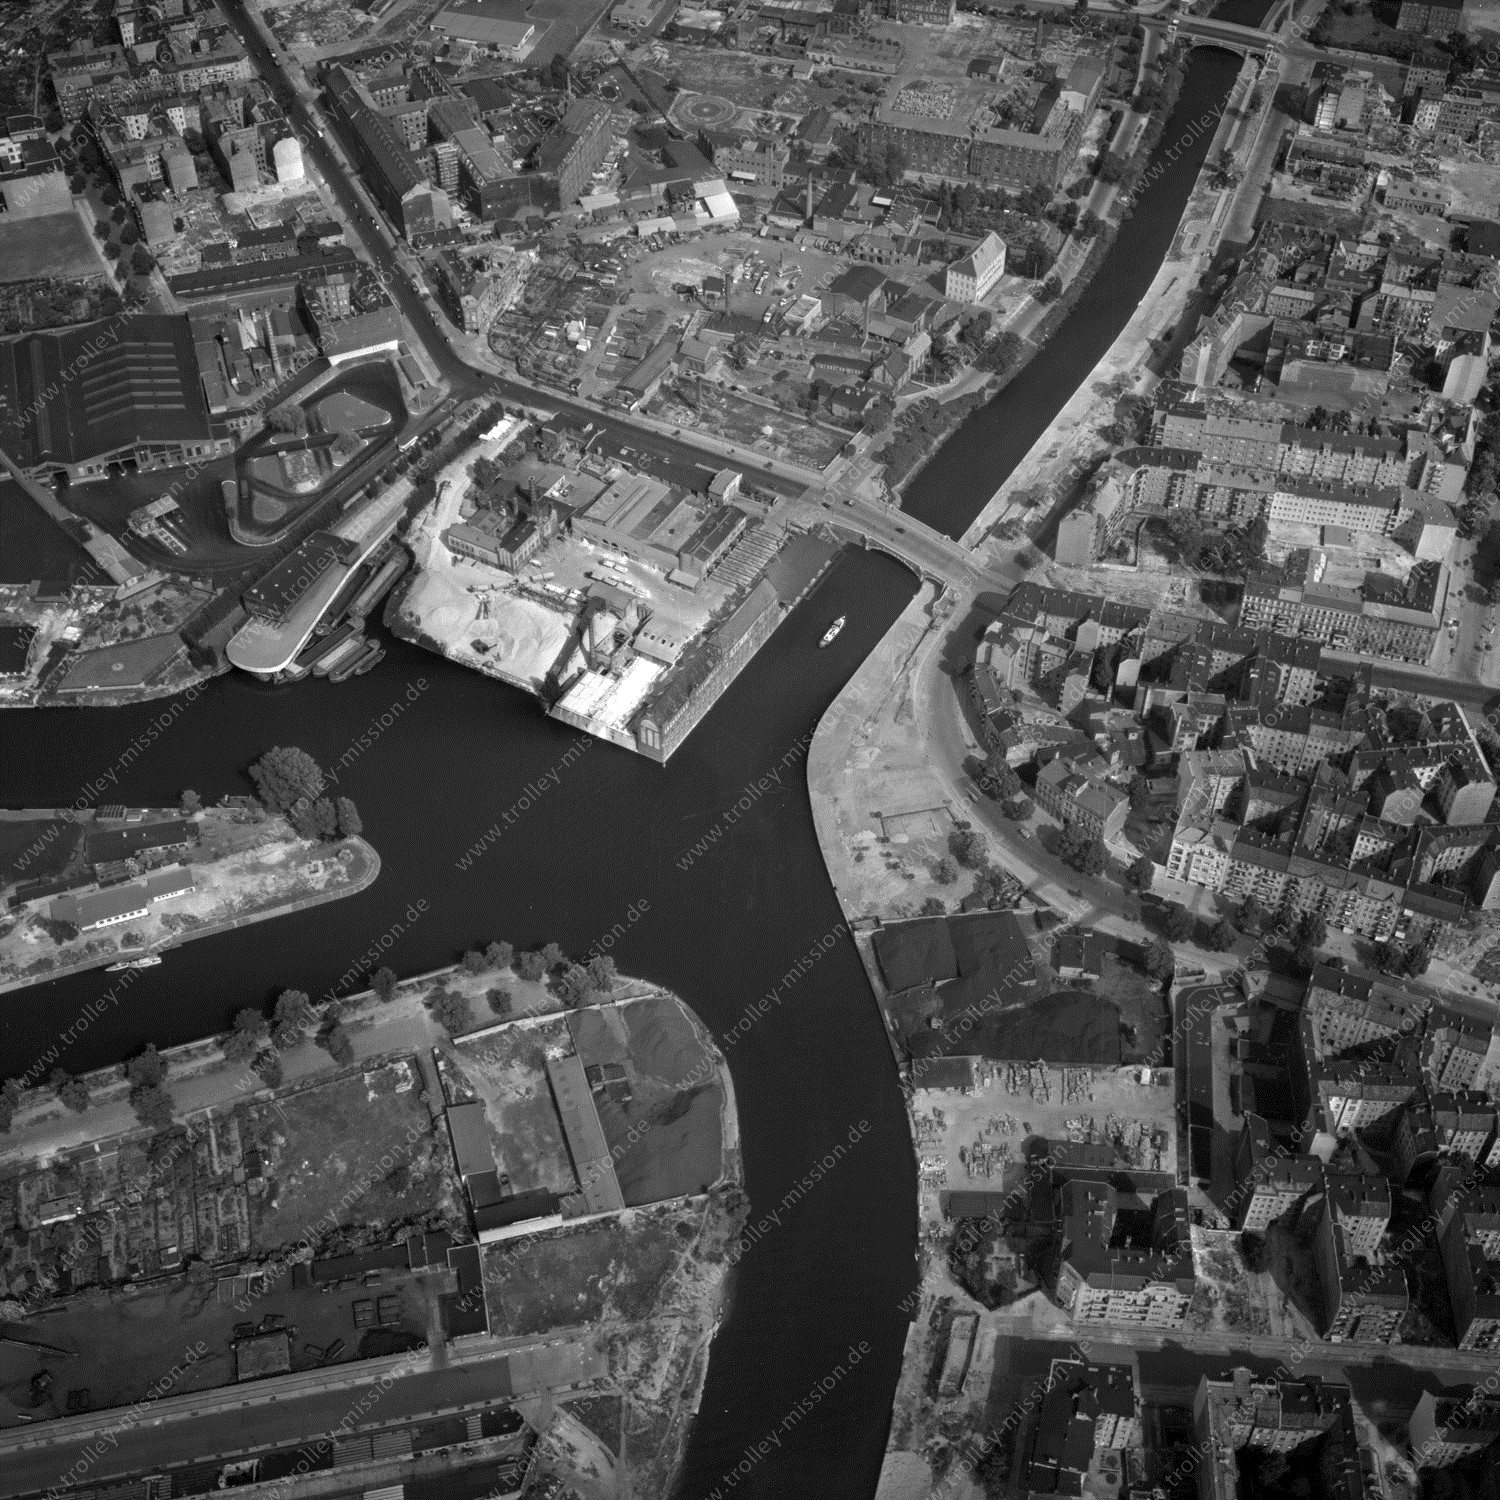 Alte Fotos und Luftbilder von Berlin - Luftbildaufnahme Nr. 08 - Historische Luftaufnahmen von West-Berlin aus dem Jahr 1954 - Flugstrecke Tango